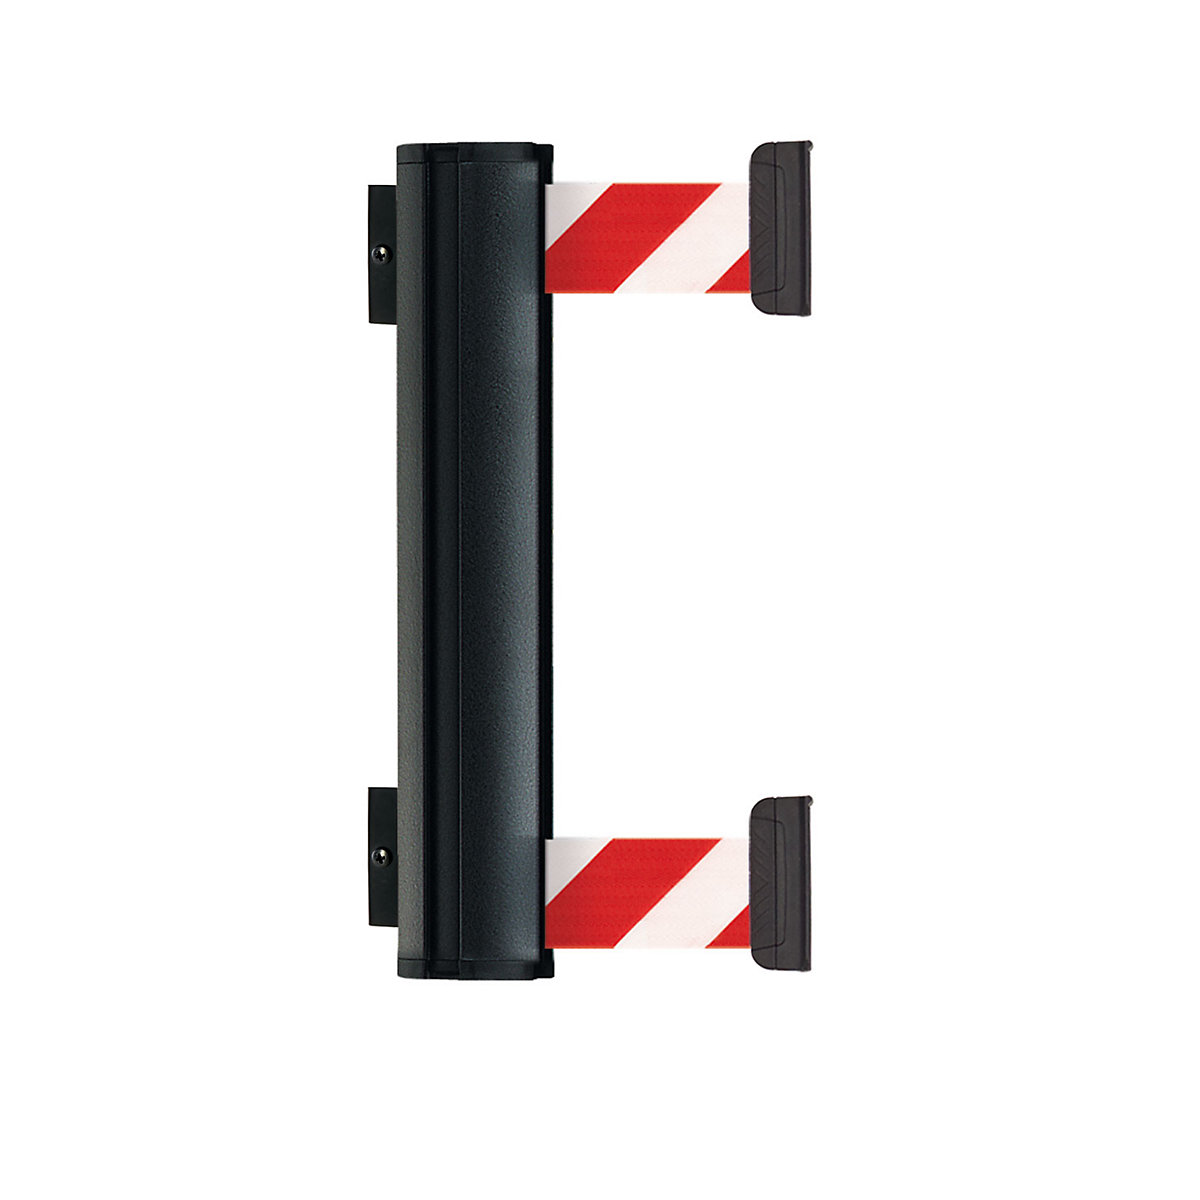 Aluminijska kaseta trake DOUBLE, izvlačenje trake maks. 2300 mm, traka u crvenoj / bijeloj boji-5